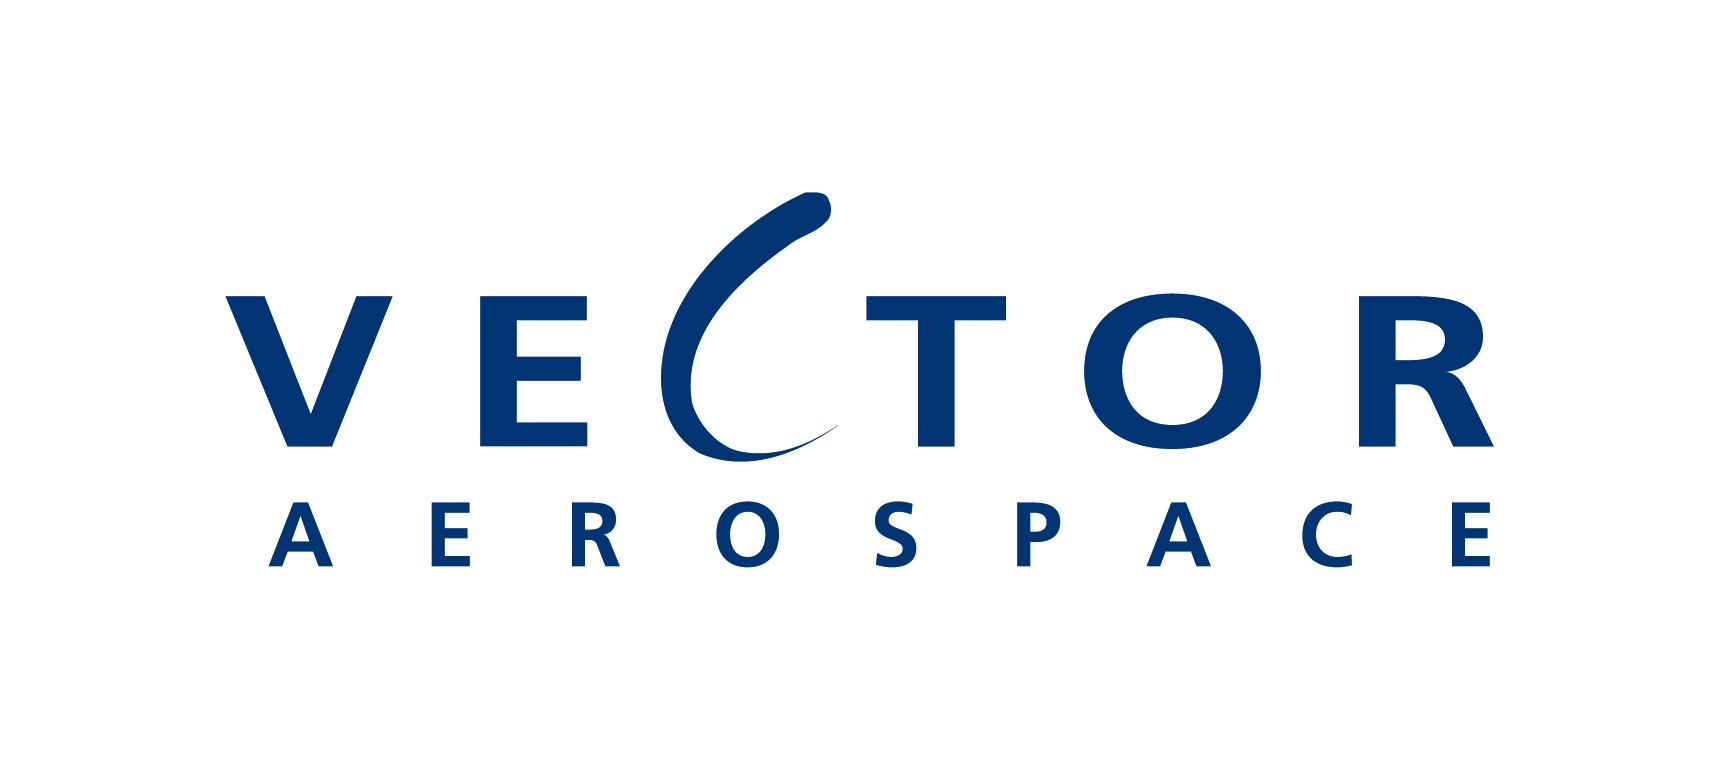 Vector Aerospace logo